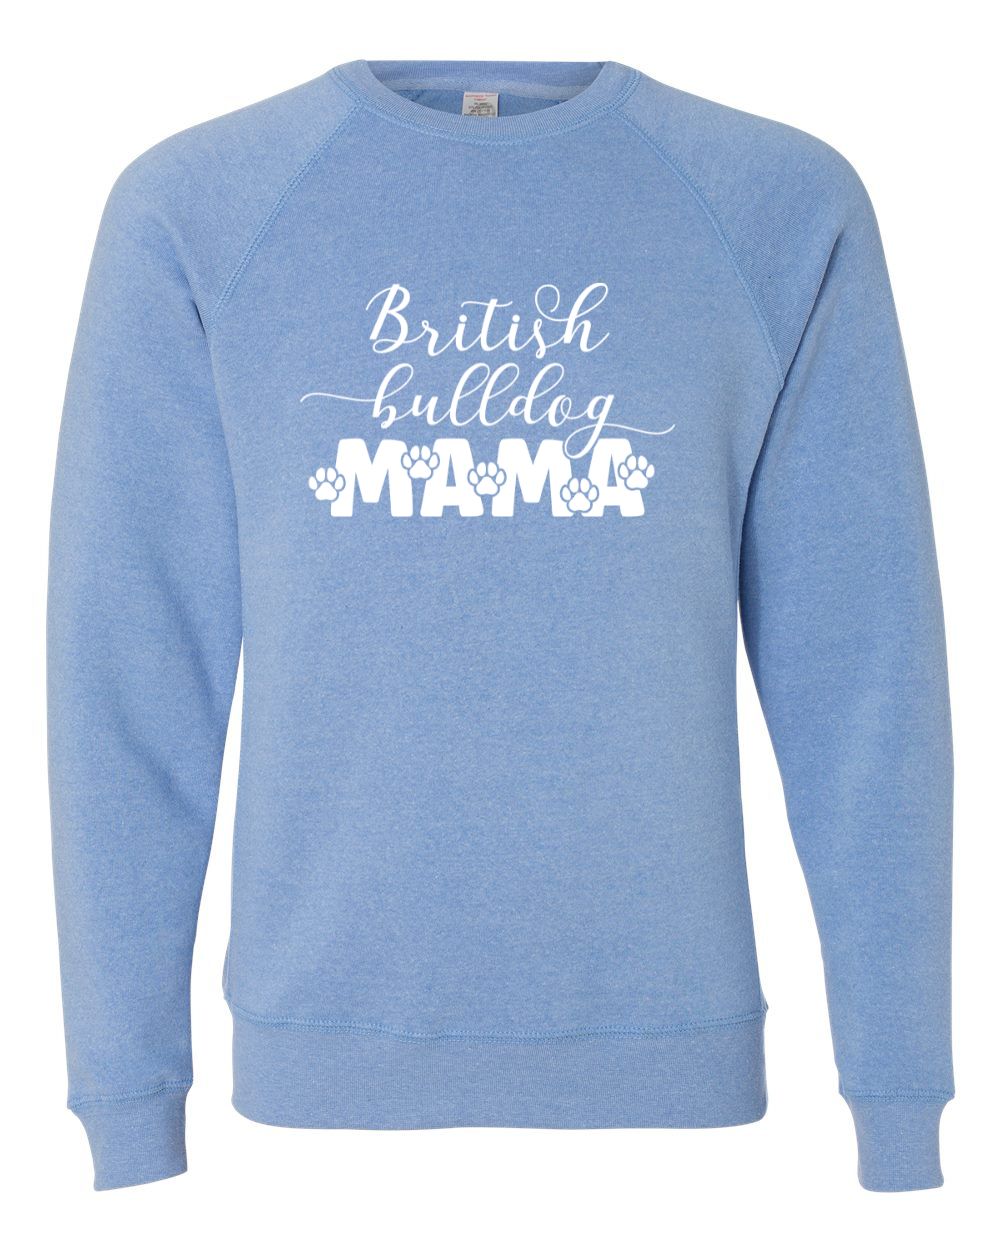 British Bulldog Mama Sweatshirt